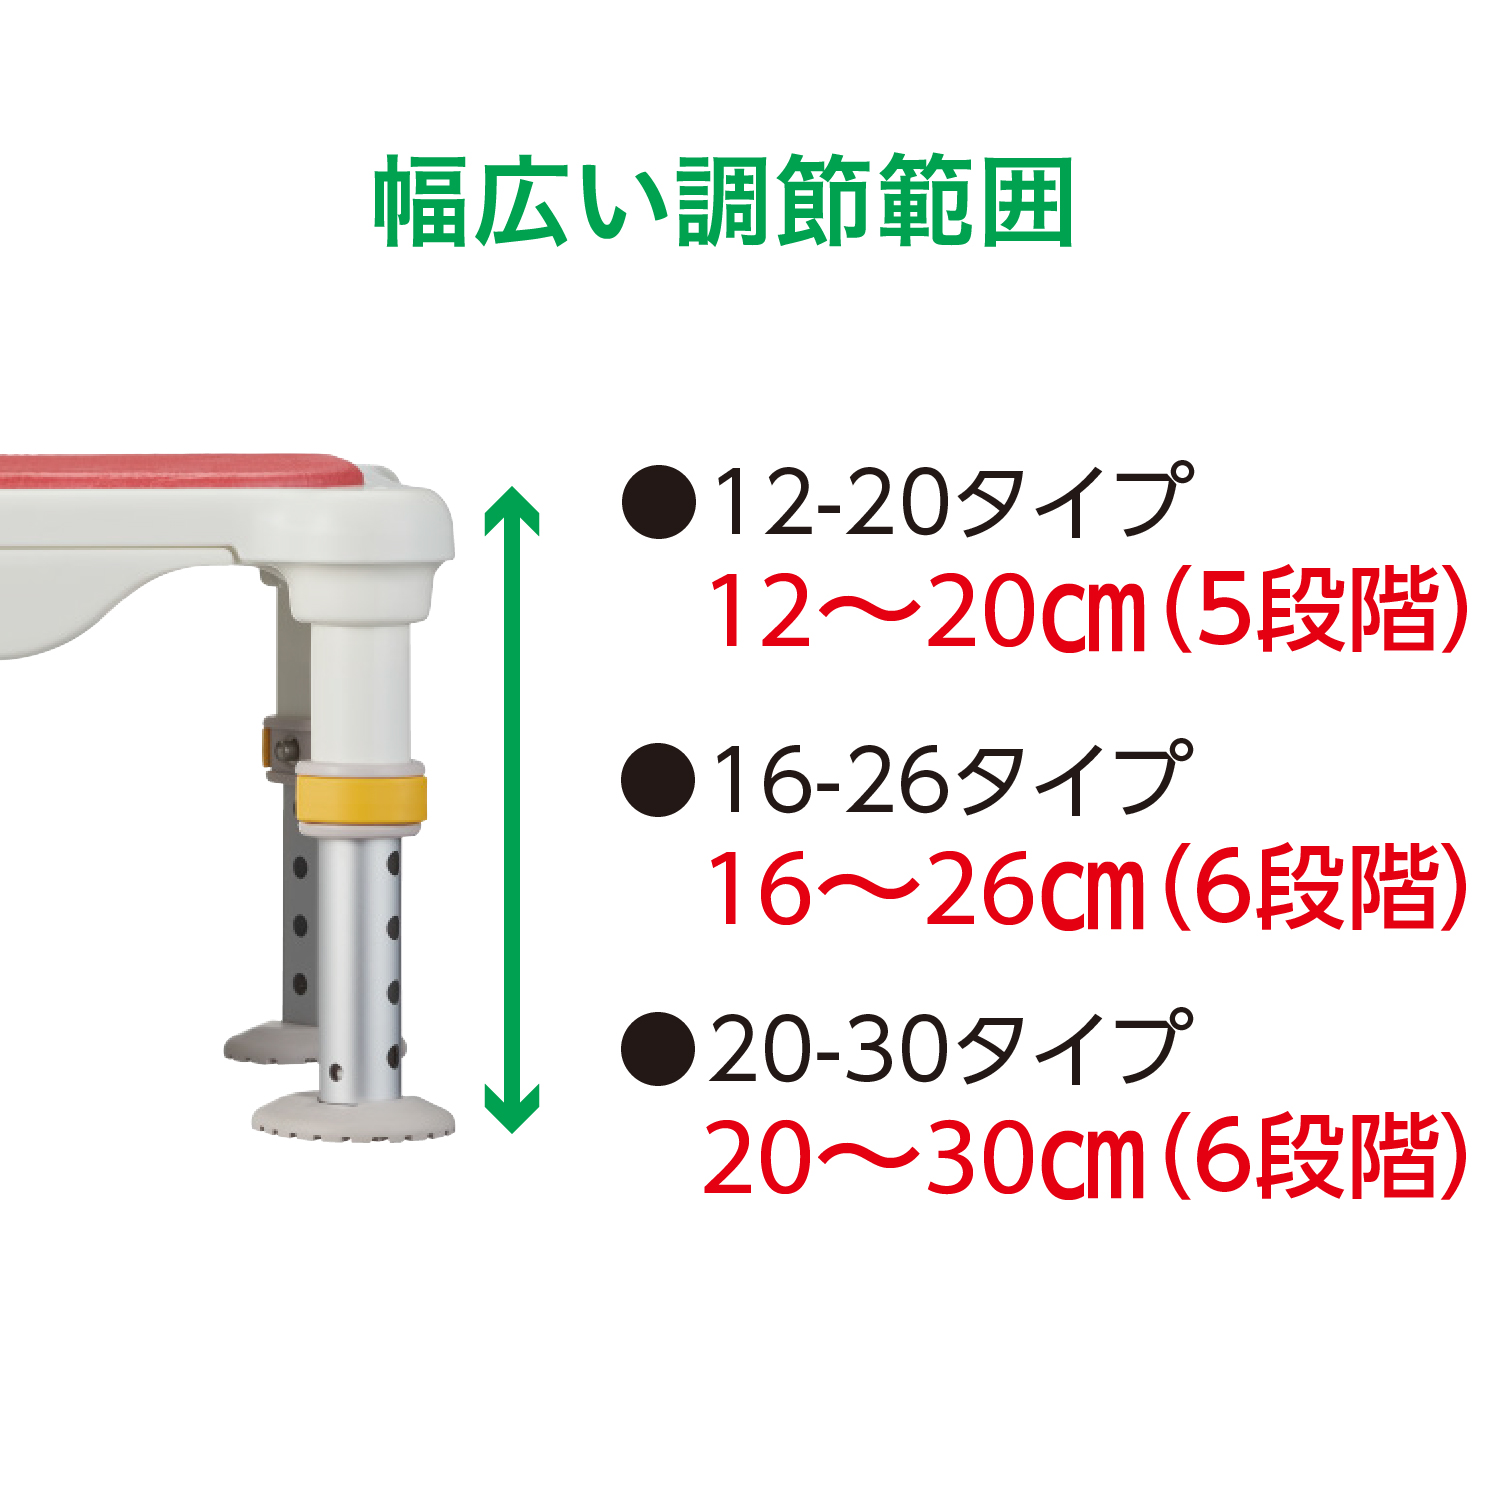 アロン化成軽量浴槽台ミニ グリーン 16-26(wf-402700-3) - 1